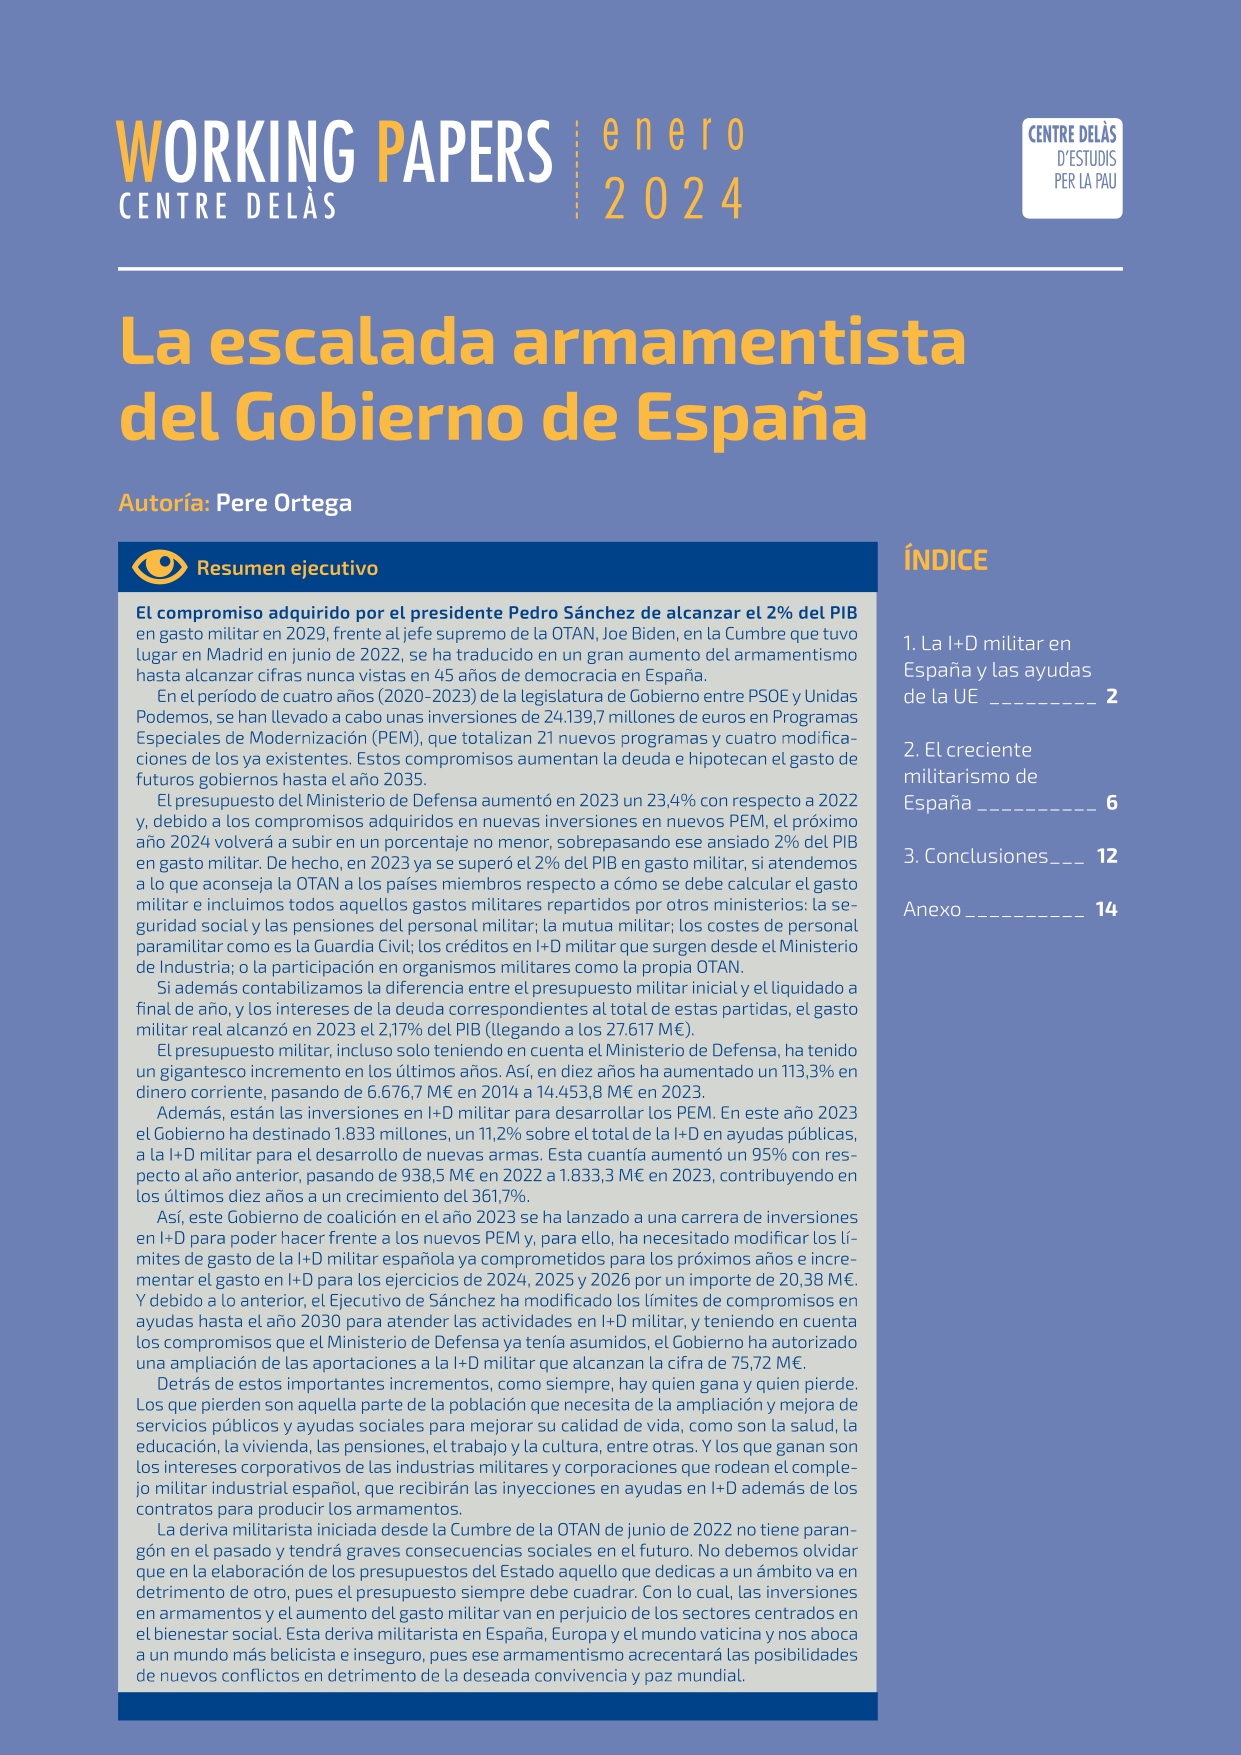 Working Paper “La escalada armamentista del Gobierno de España”